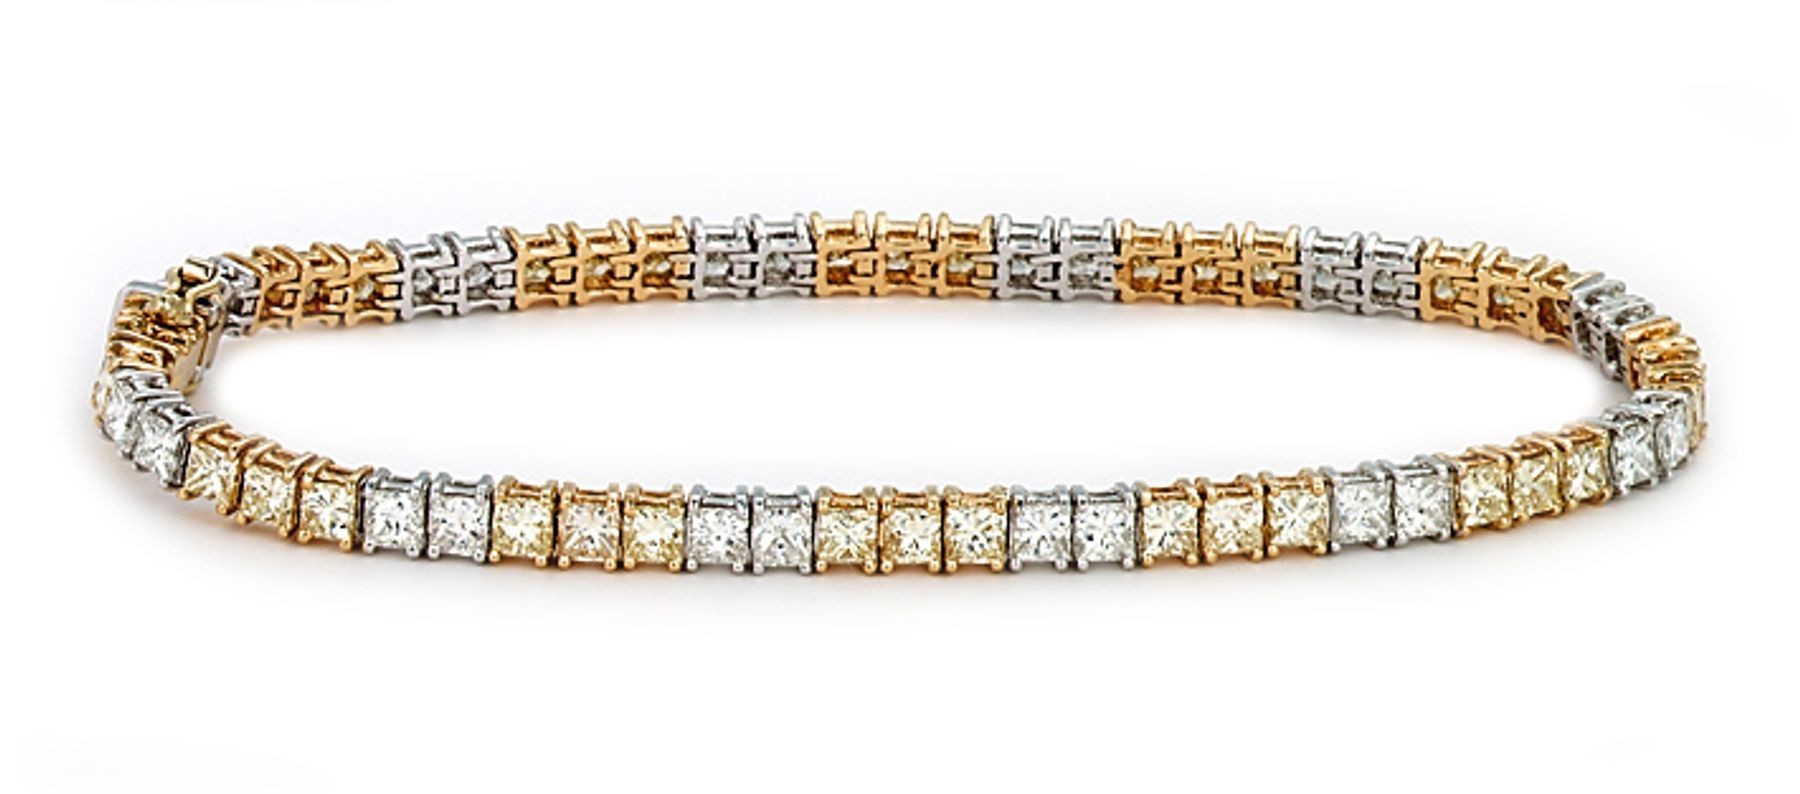 View Platinum Gold Heart Tag Bracelet | Diamond Color Cut Clarity